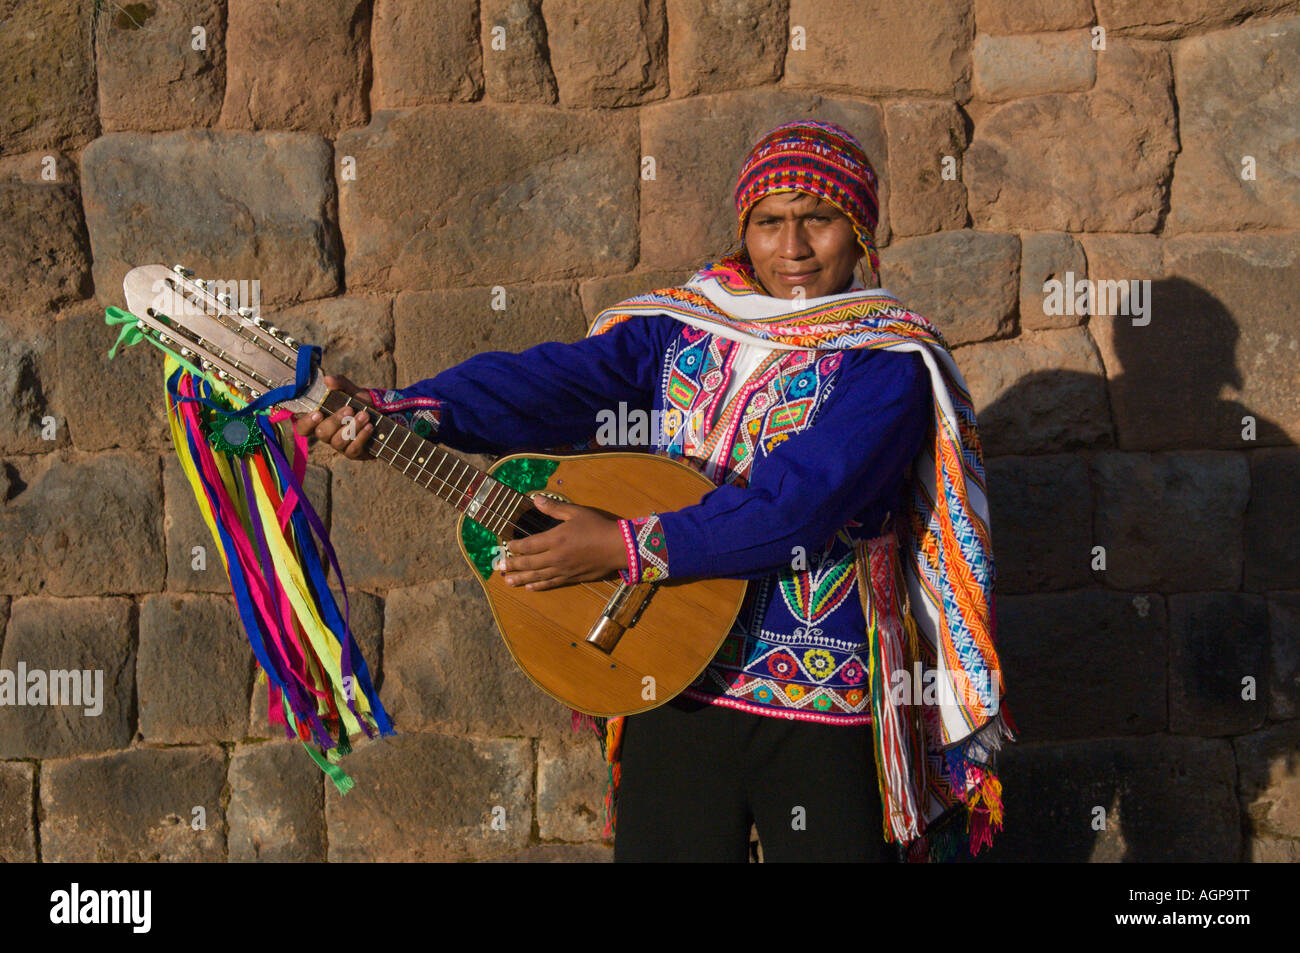 Pérou, Tipon ruines Incas, homme musicien avec la guitare Photo Stock -  Alamy